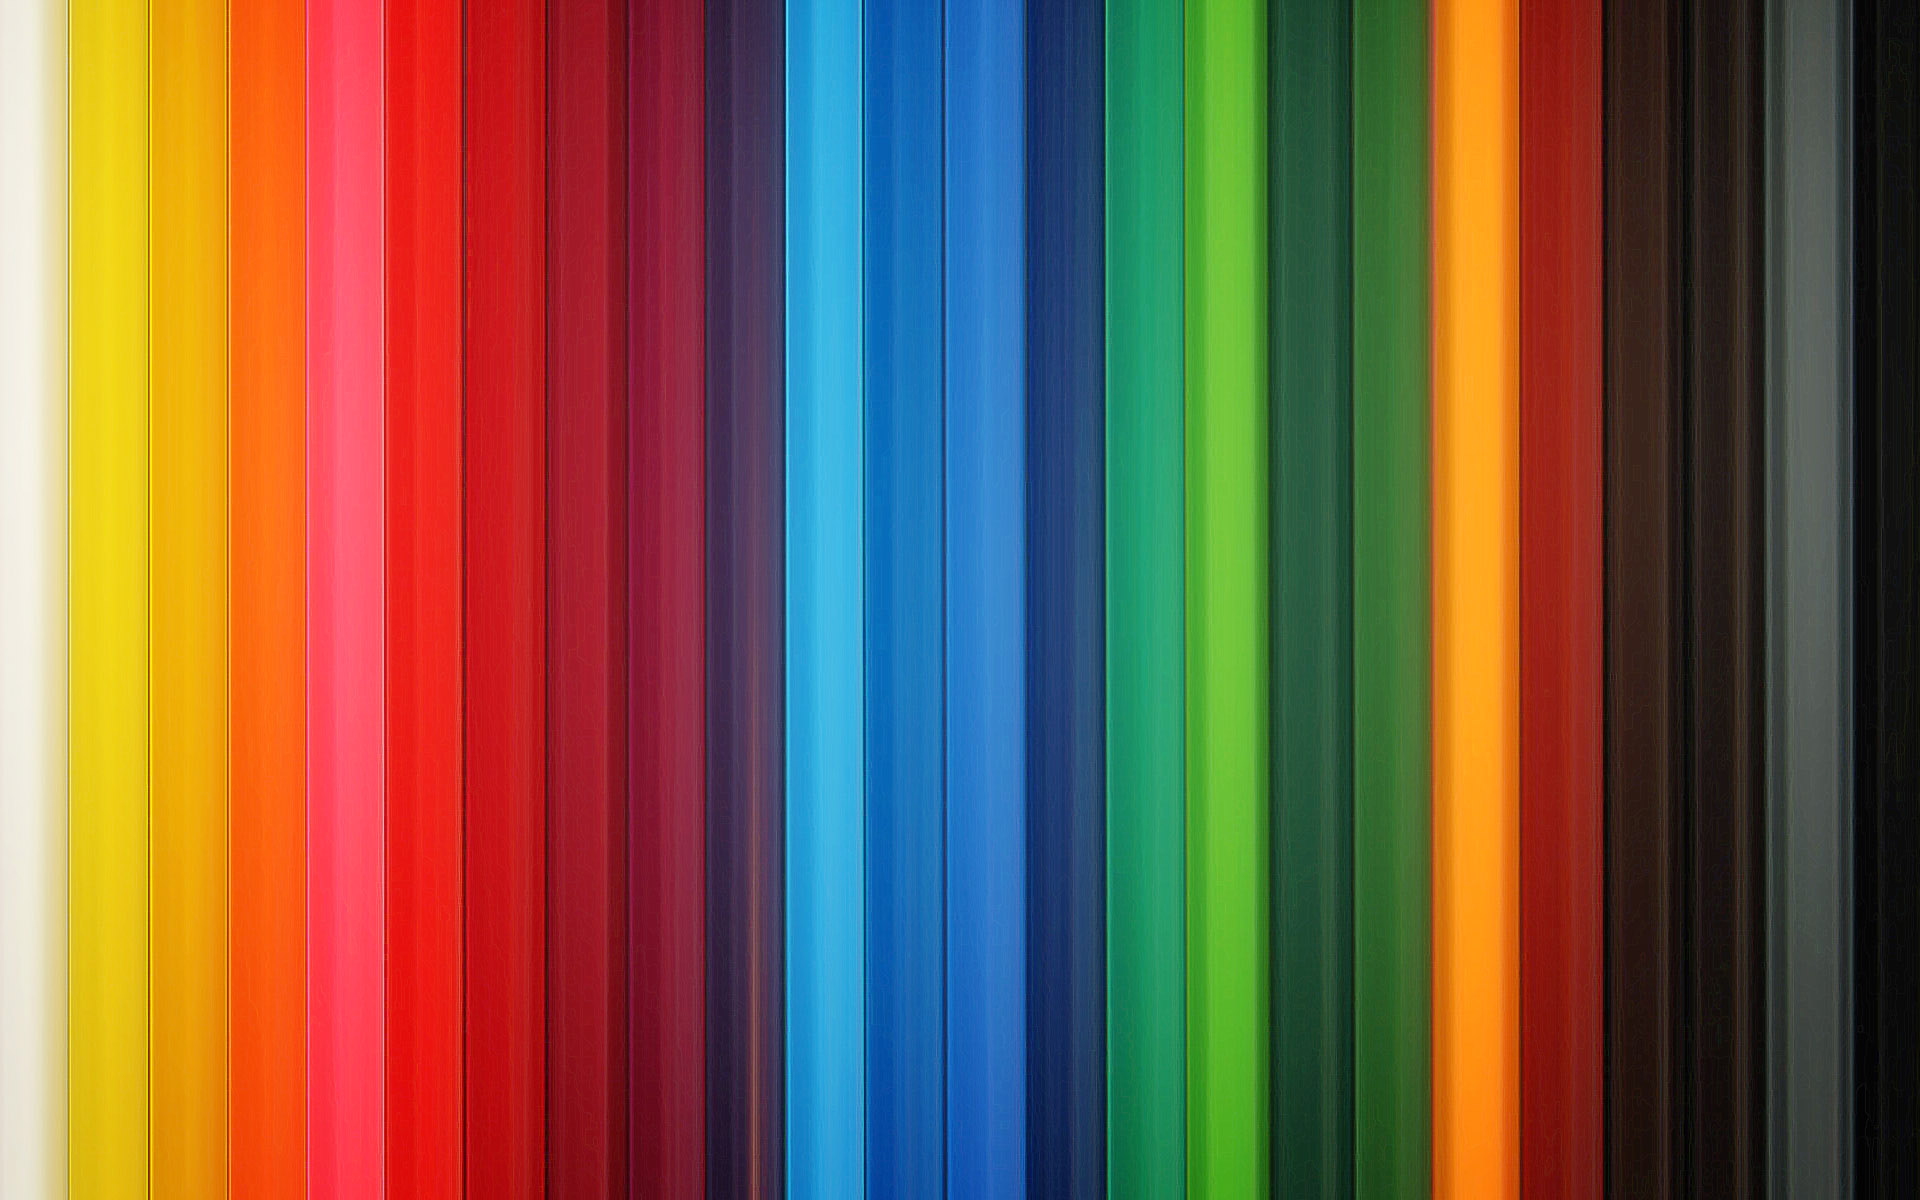 70+] Colorful Wallpaper Hd - WallpaperSafari